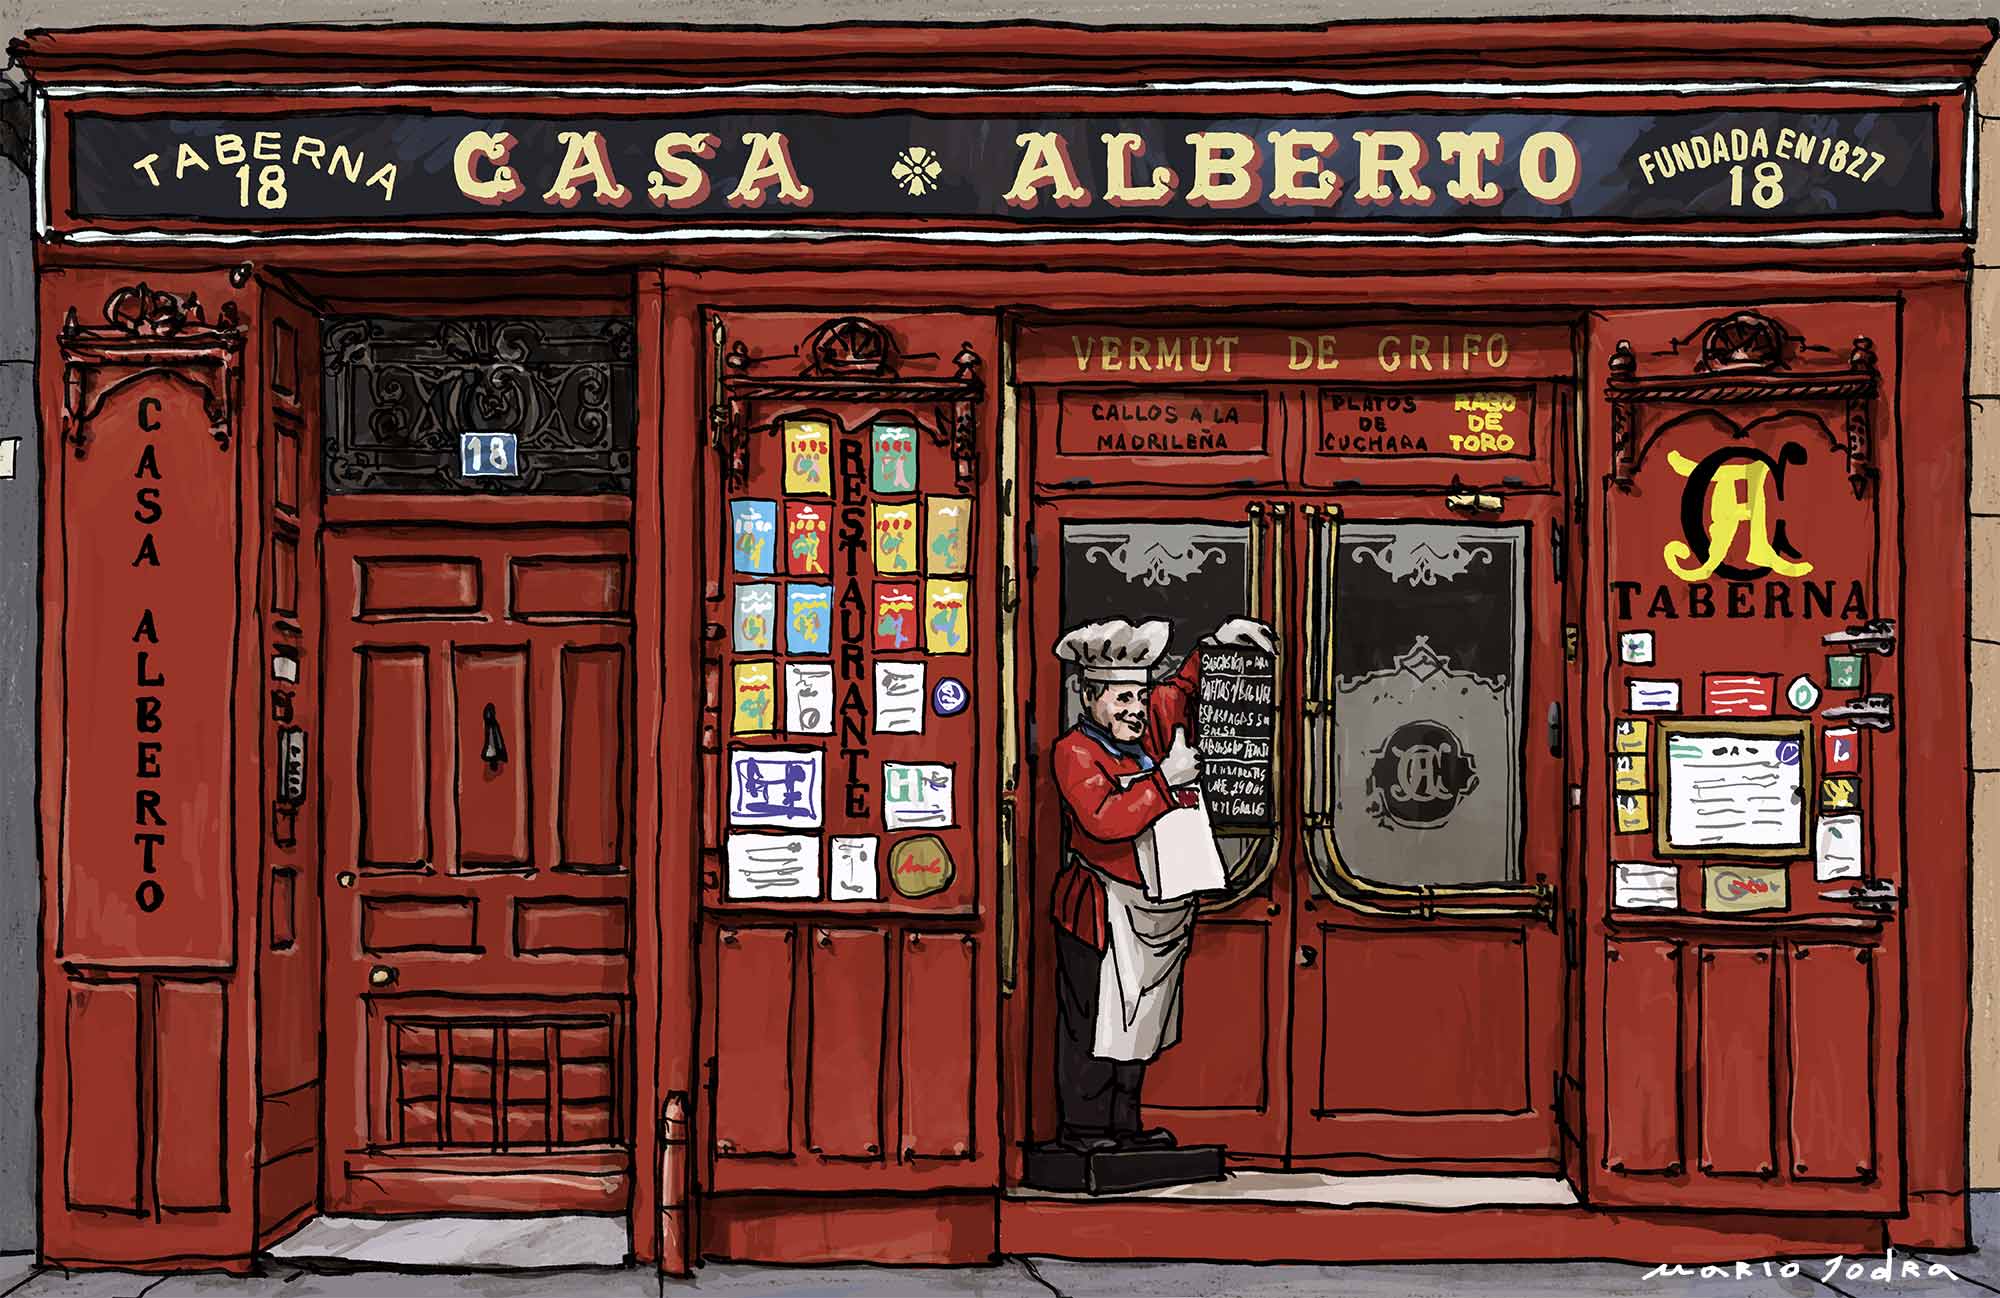 Mario Jodra illustration Art - Casa Alberto. Madrid taverns. Since 1827